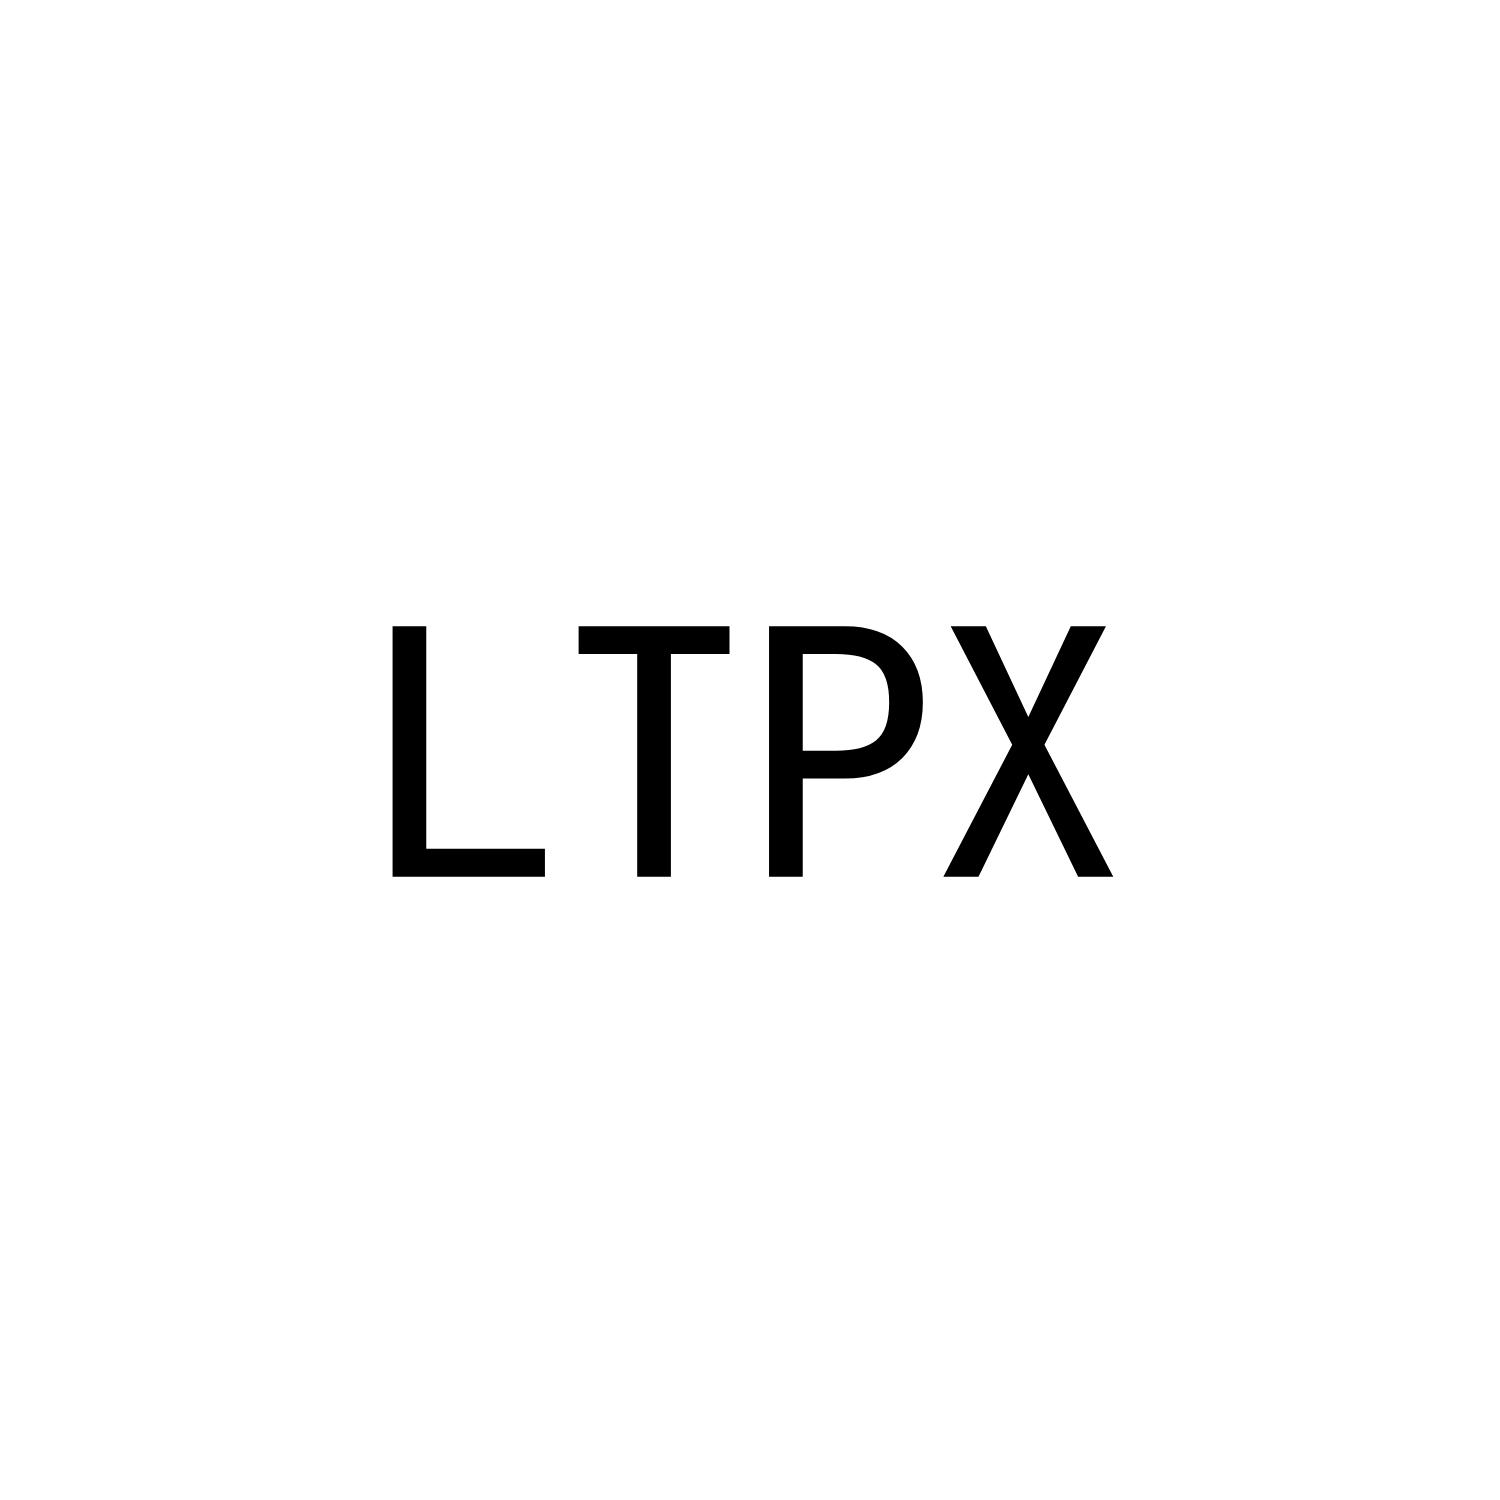 LTPX